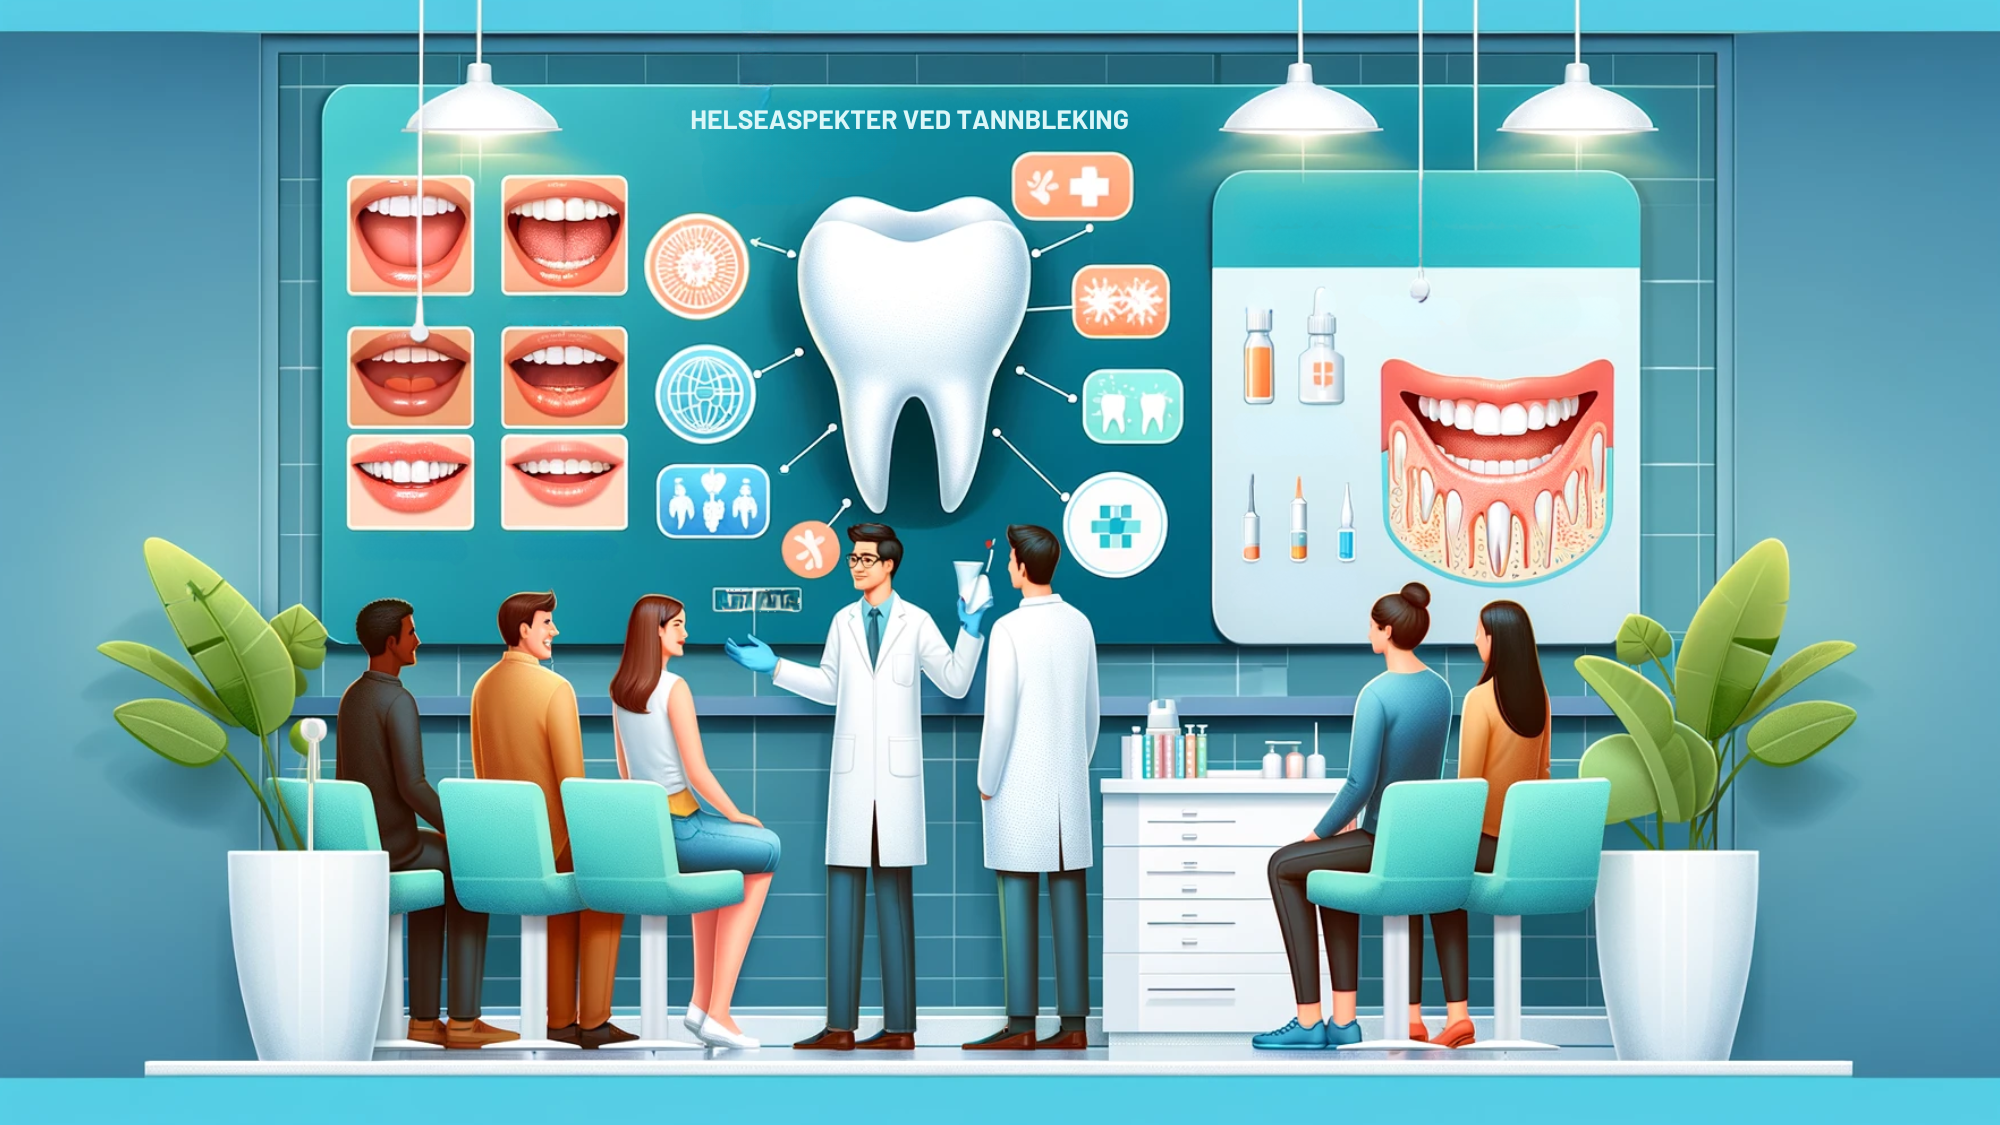 Illustrasjon av tannblekingsprosess med tannlege og pasienter i en klinikk